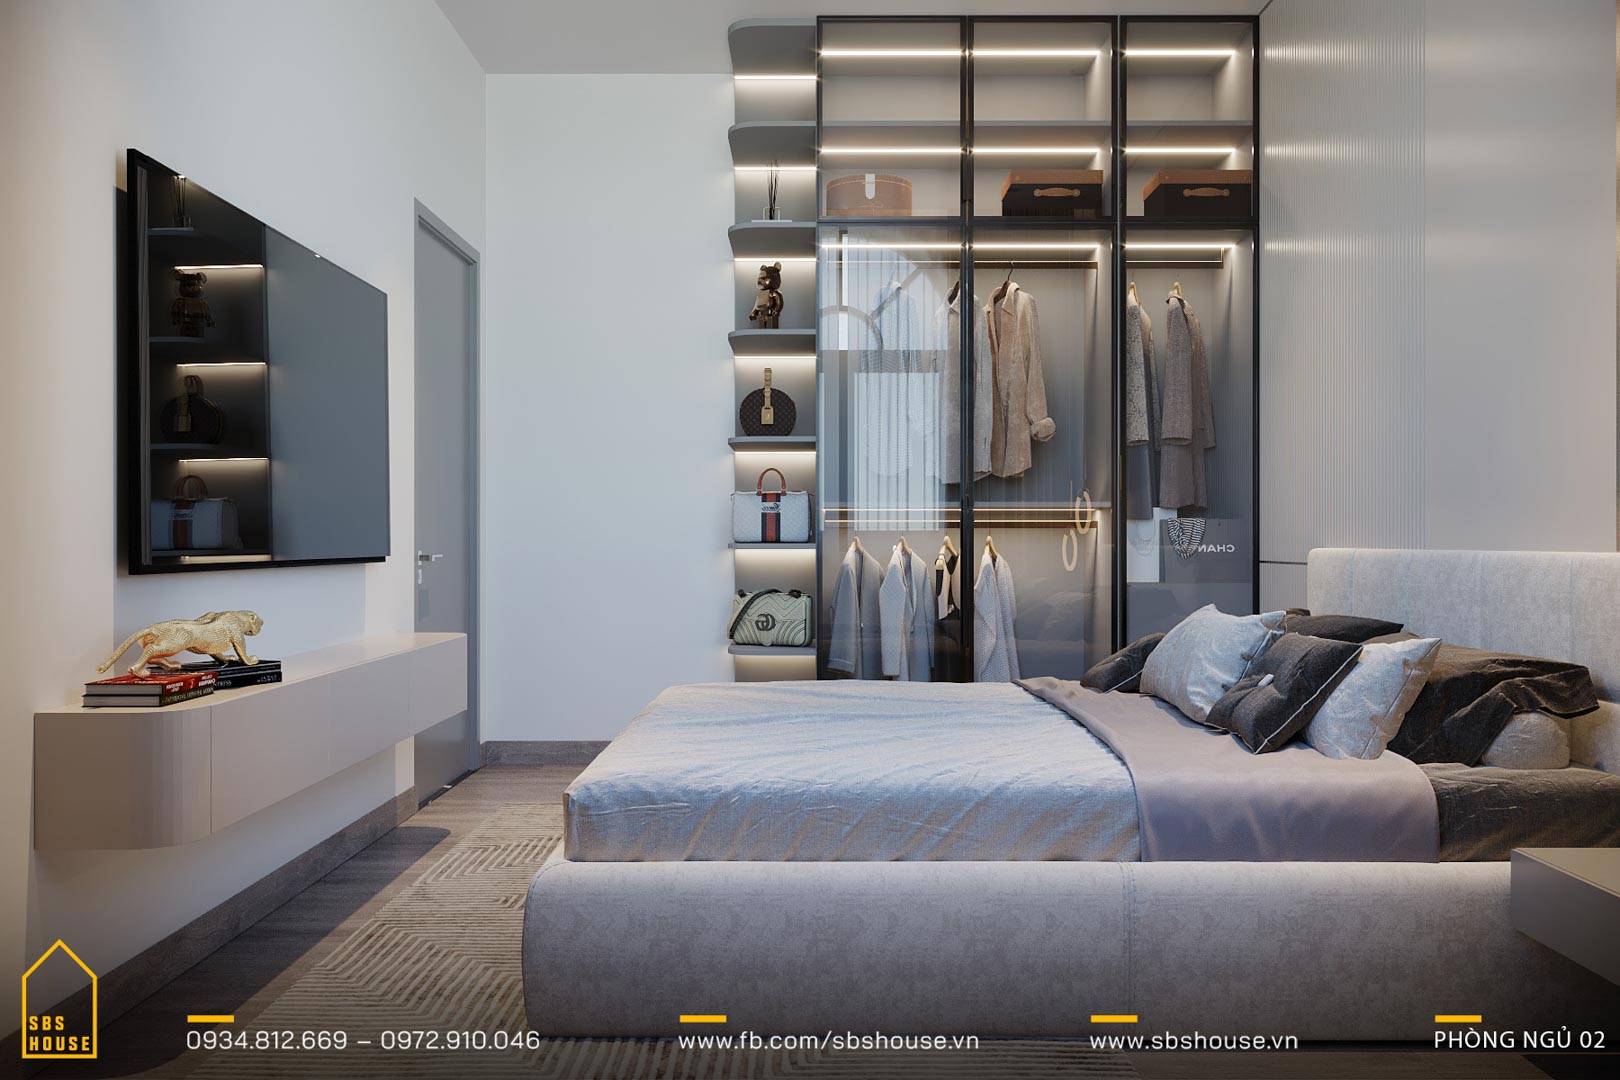 Thiết kế phòng ngủ theo phong cách tối giản giúp gia chủ dễ dàng chìm vào giấc ngủ sâu, tái tạo năng lượng mỗi ngày.